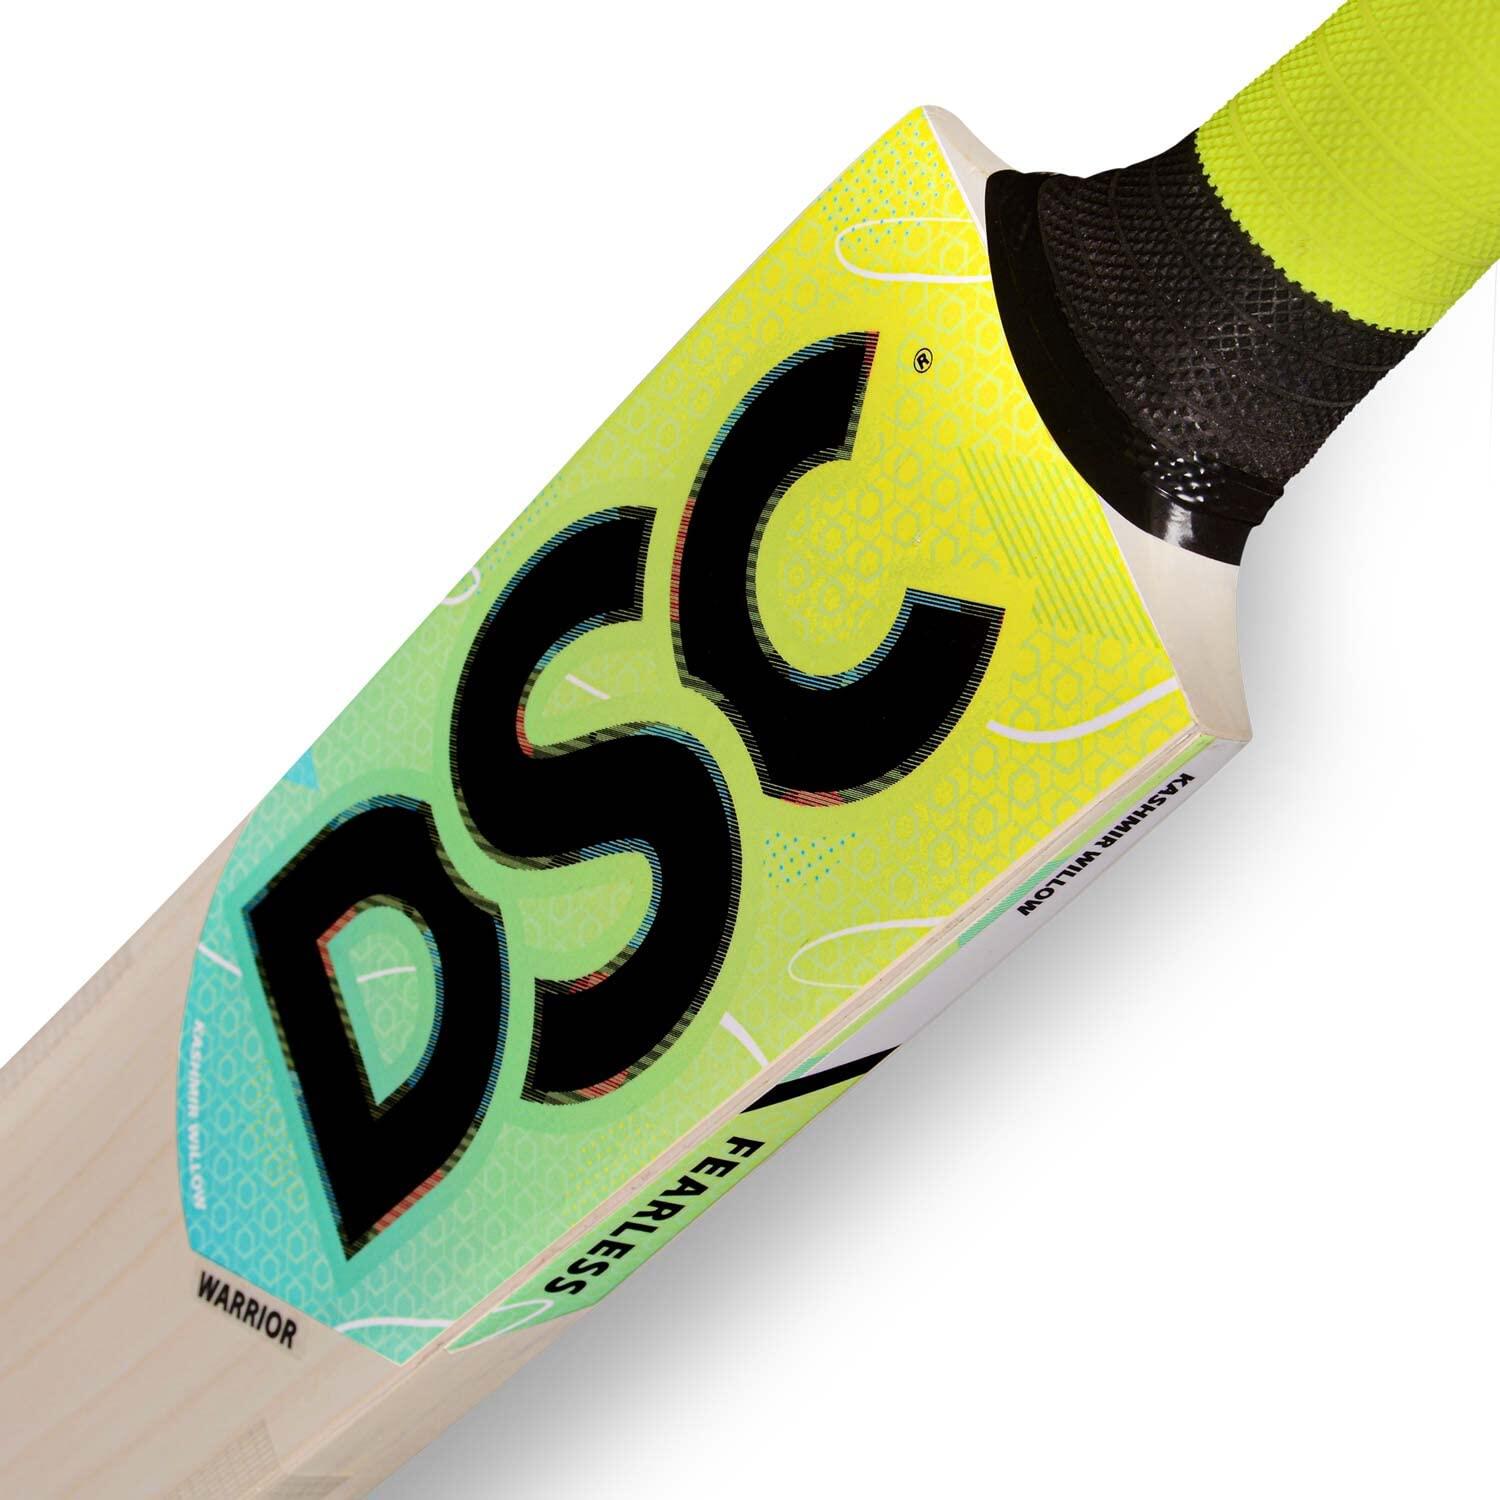 DSC Wildfire Warrior Tennis Cricket Bat Short Handle 4/6